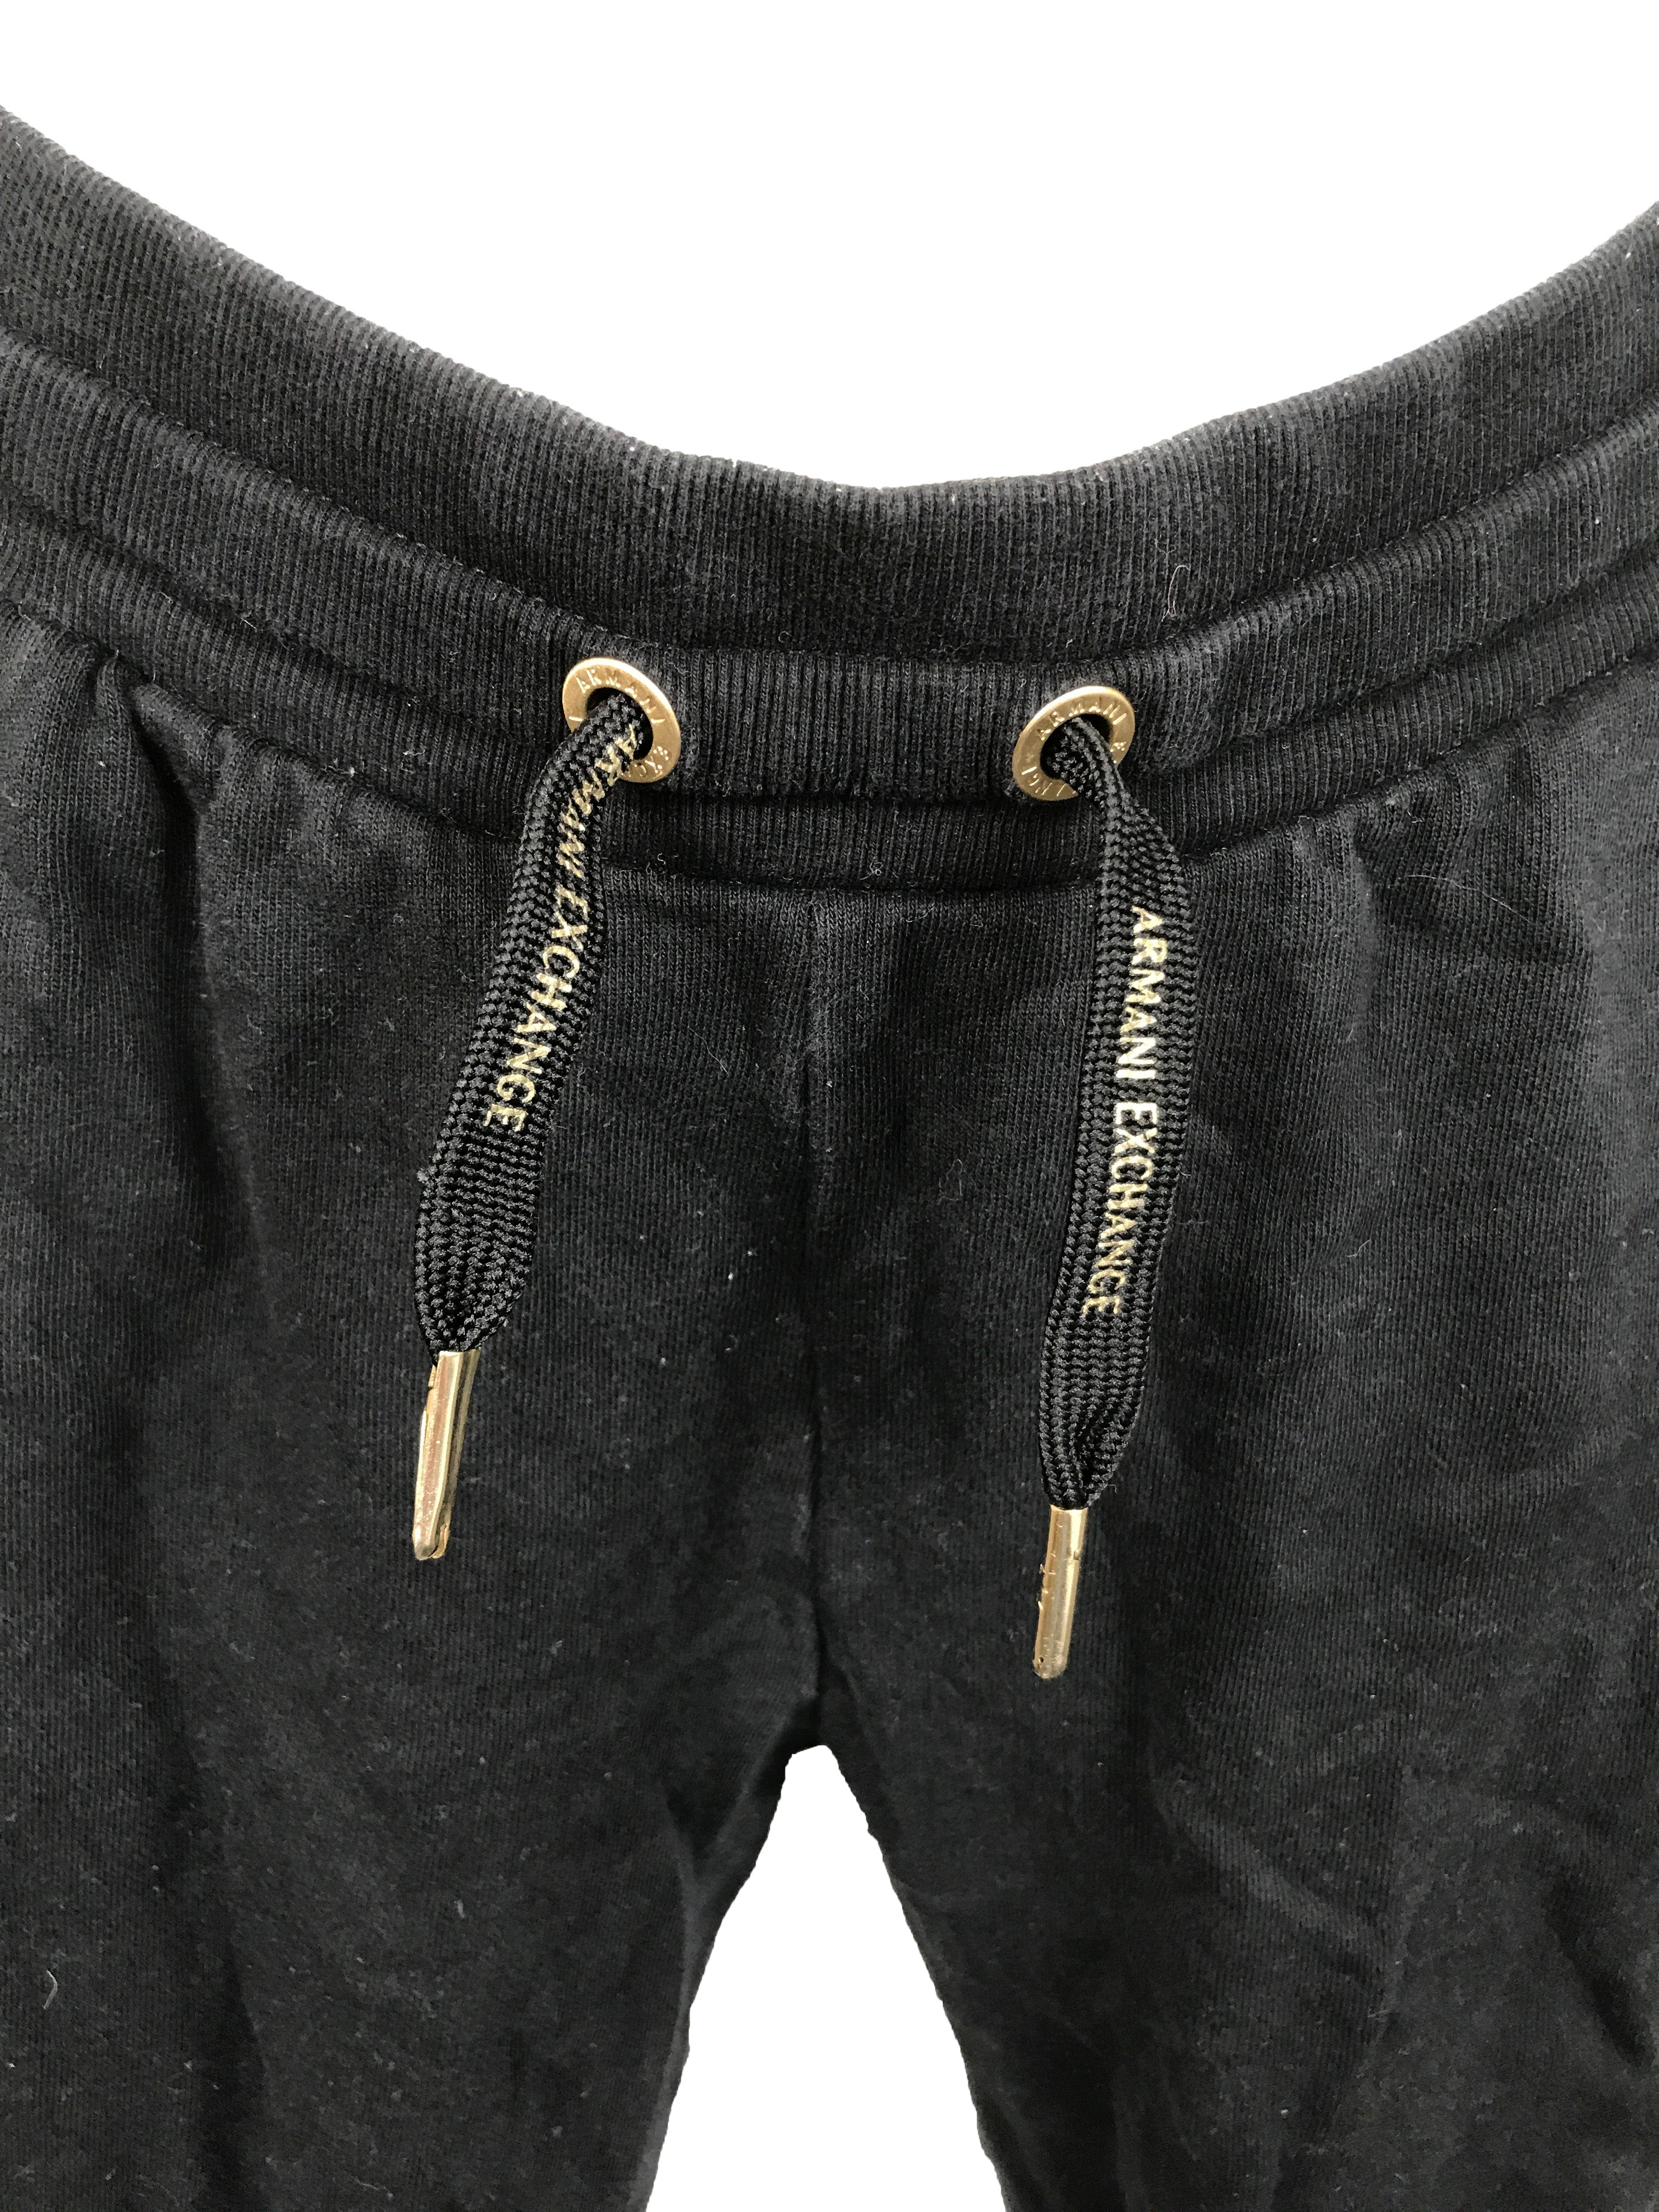 Armani Exchange Black Sweatpants Women's Size M